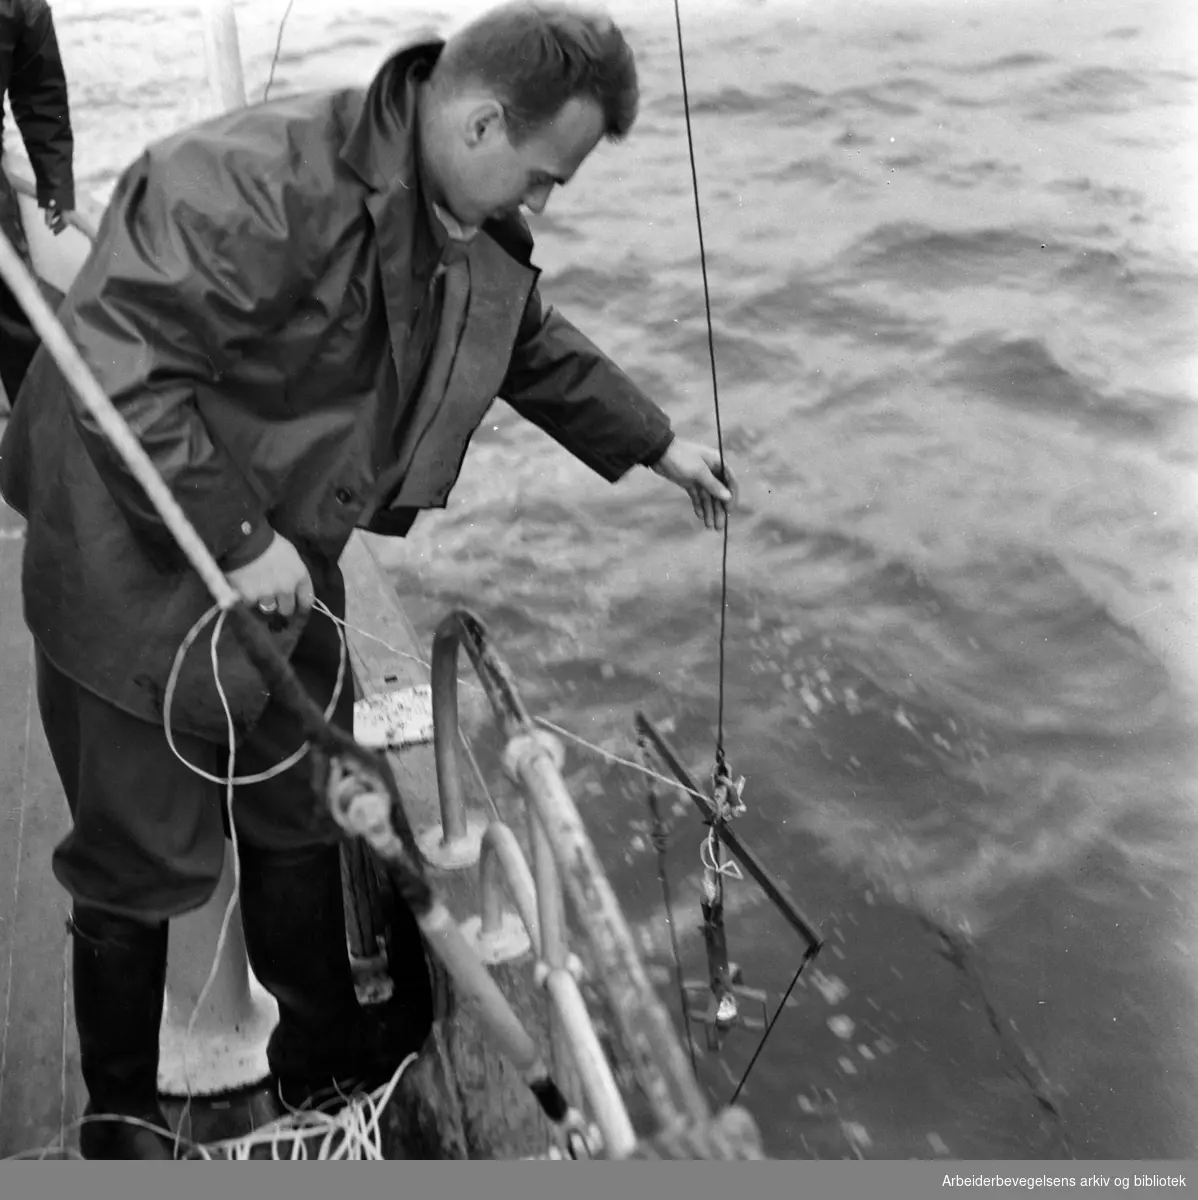 Lasse Berglind fra Vannforskningsinstituttet tar vannprøver i Indre Oslofjord. Bilde fra forskningskutteren "Gunnar Knudsen". Oktober 1960